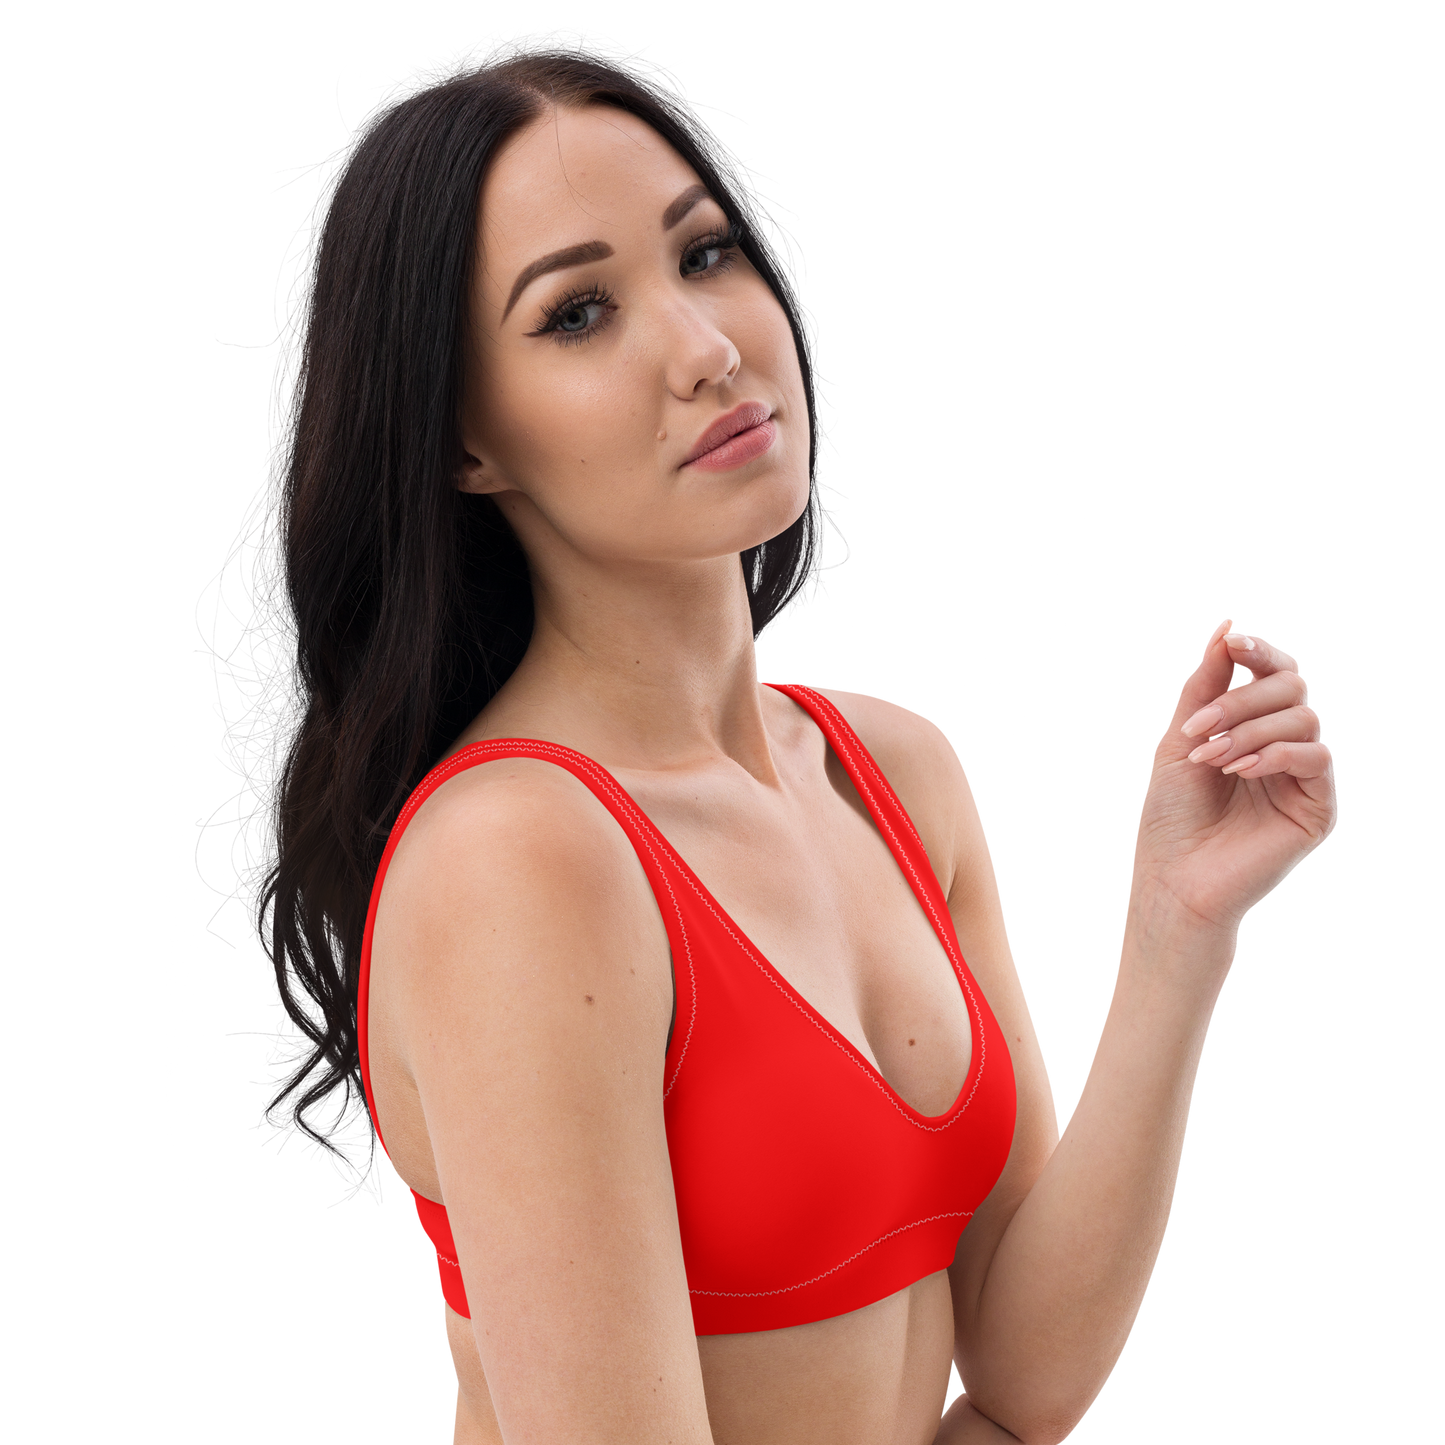 Lifeguard Red Recycled Bikini Top